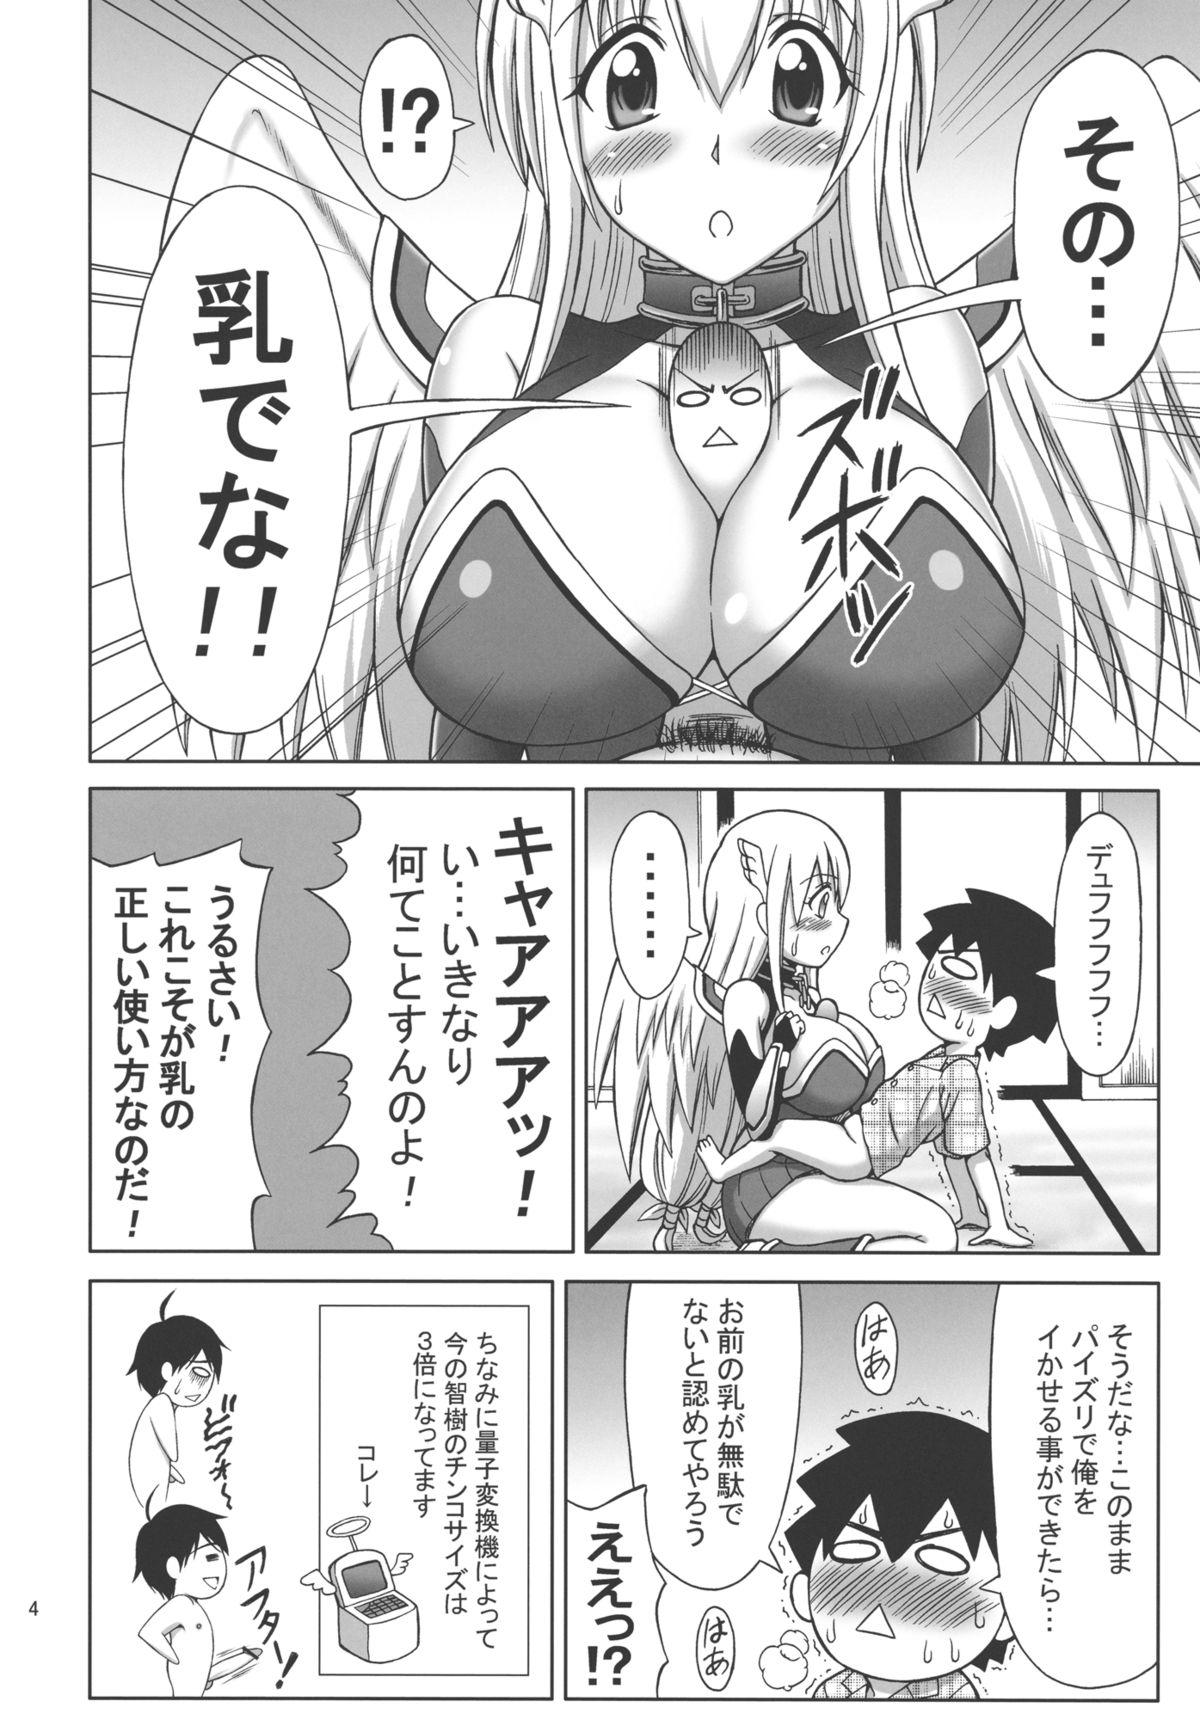 Sexo Anal Mikakunin Seibutsu OO - Sora no otoshimono Step Dad - Page 4